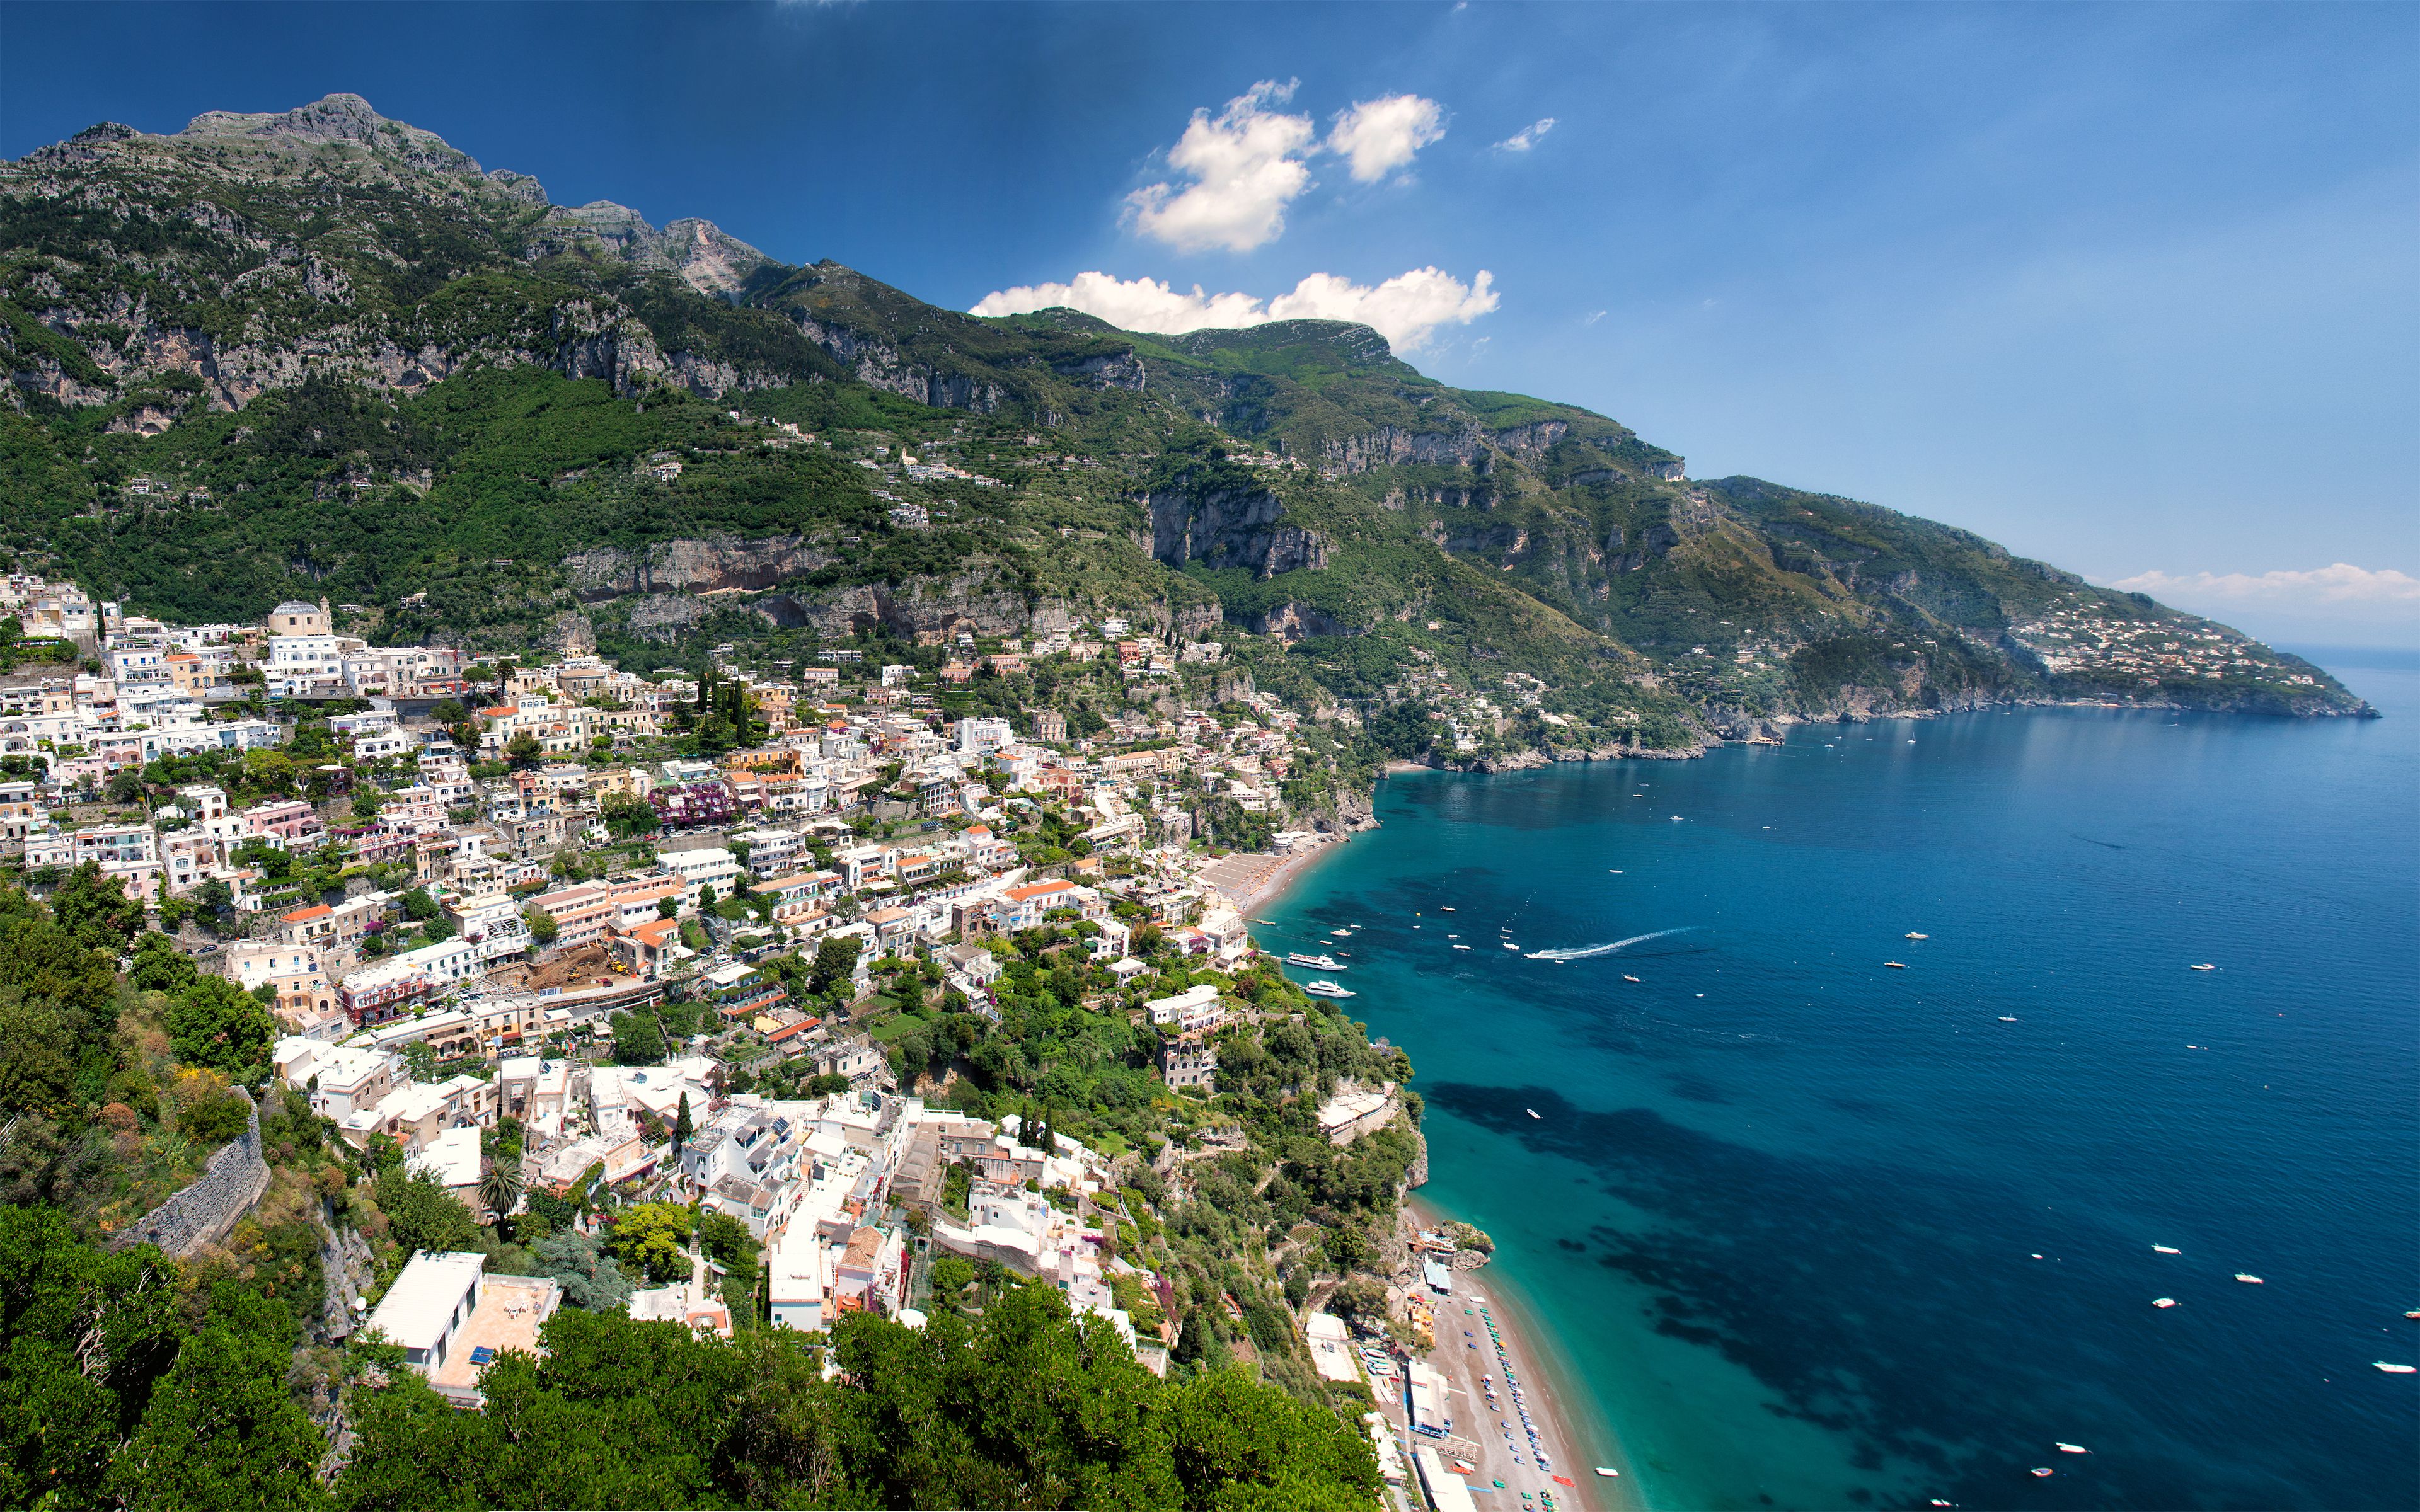 Amazing Amalfi Coast, Italy wallpaper and image